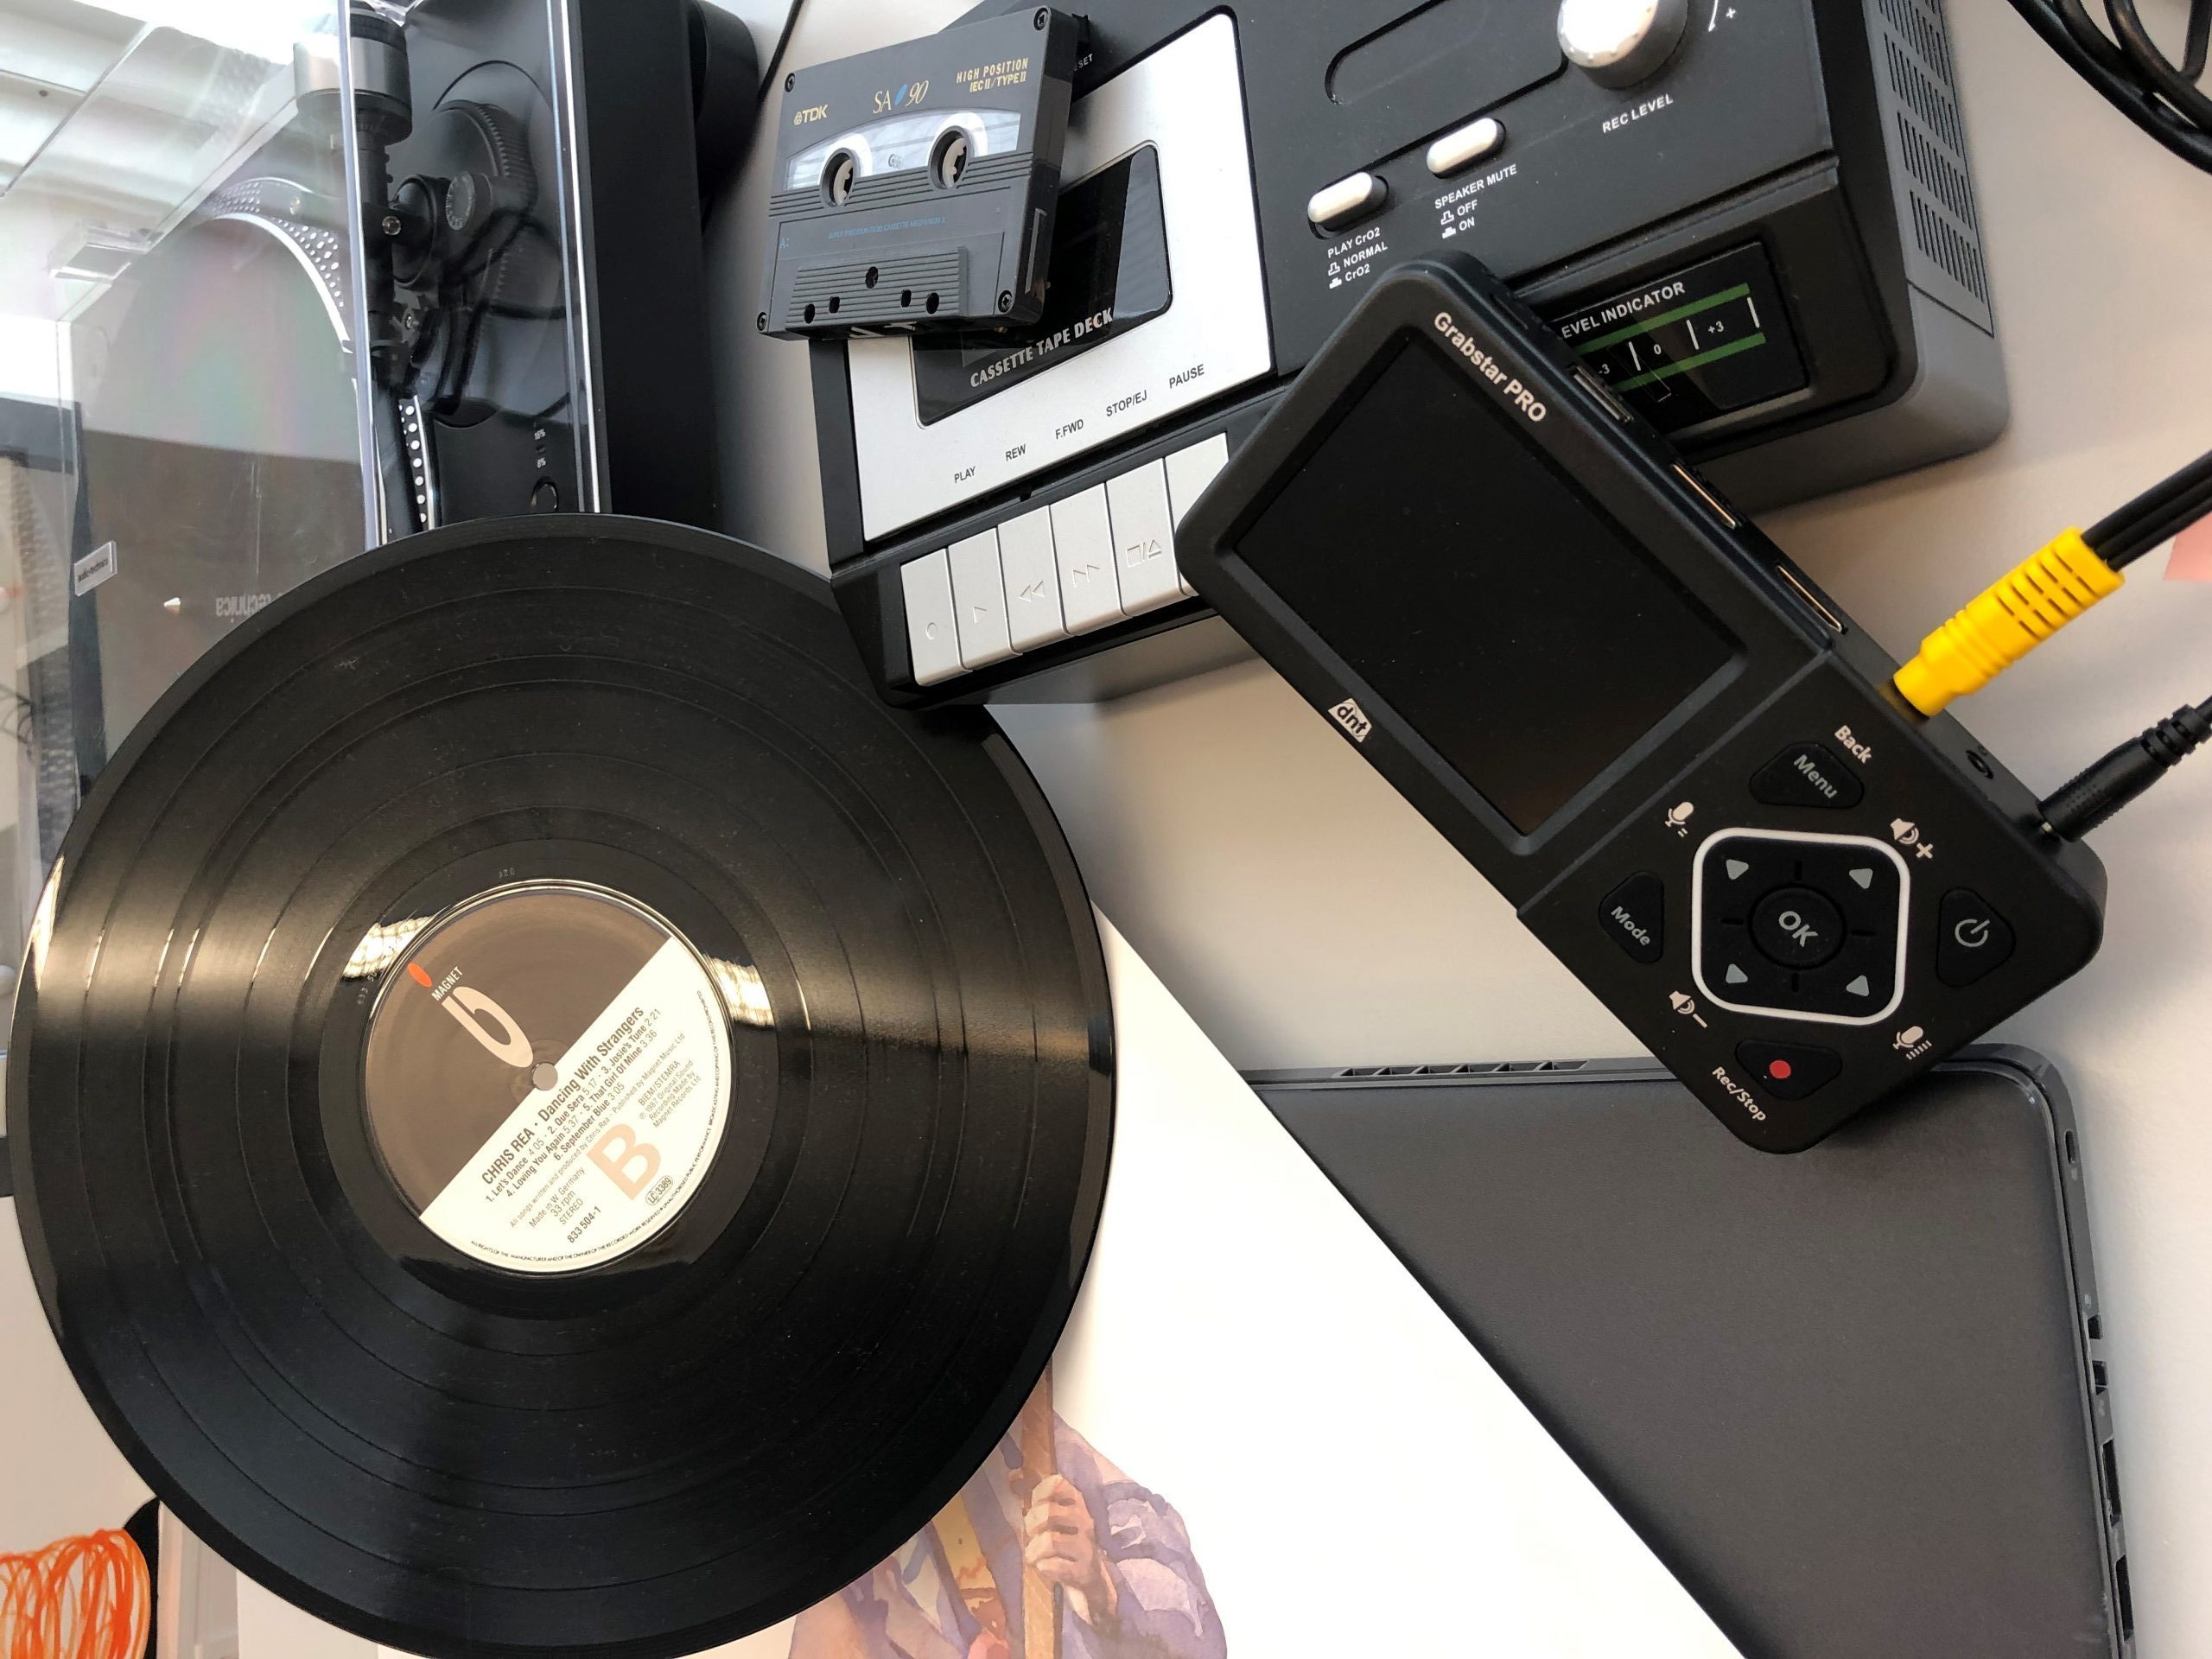 Digitalisierungsstation mit Schallplattenspieler und mehr auf Tisch